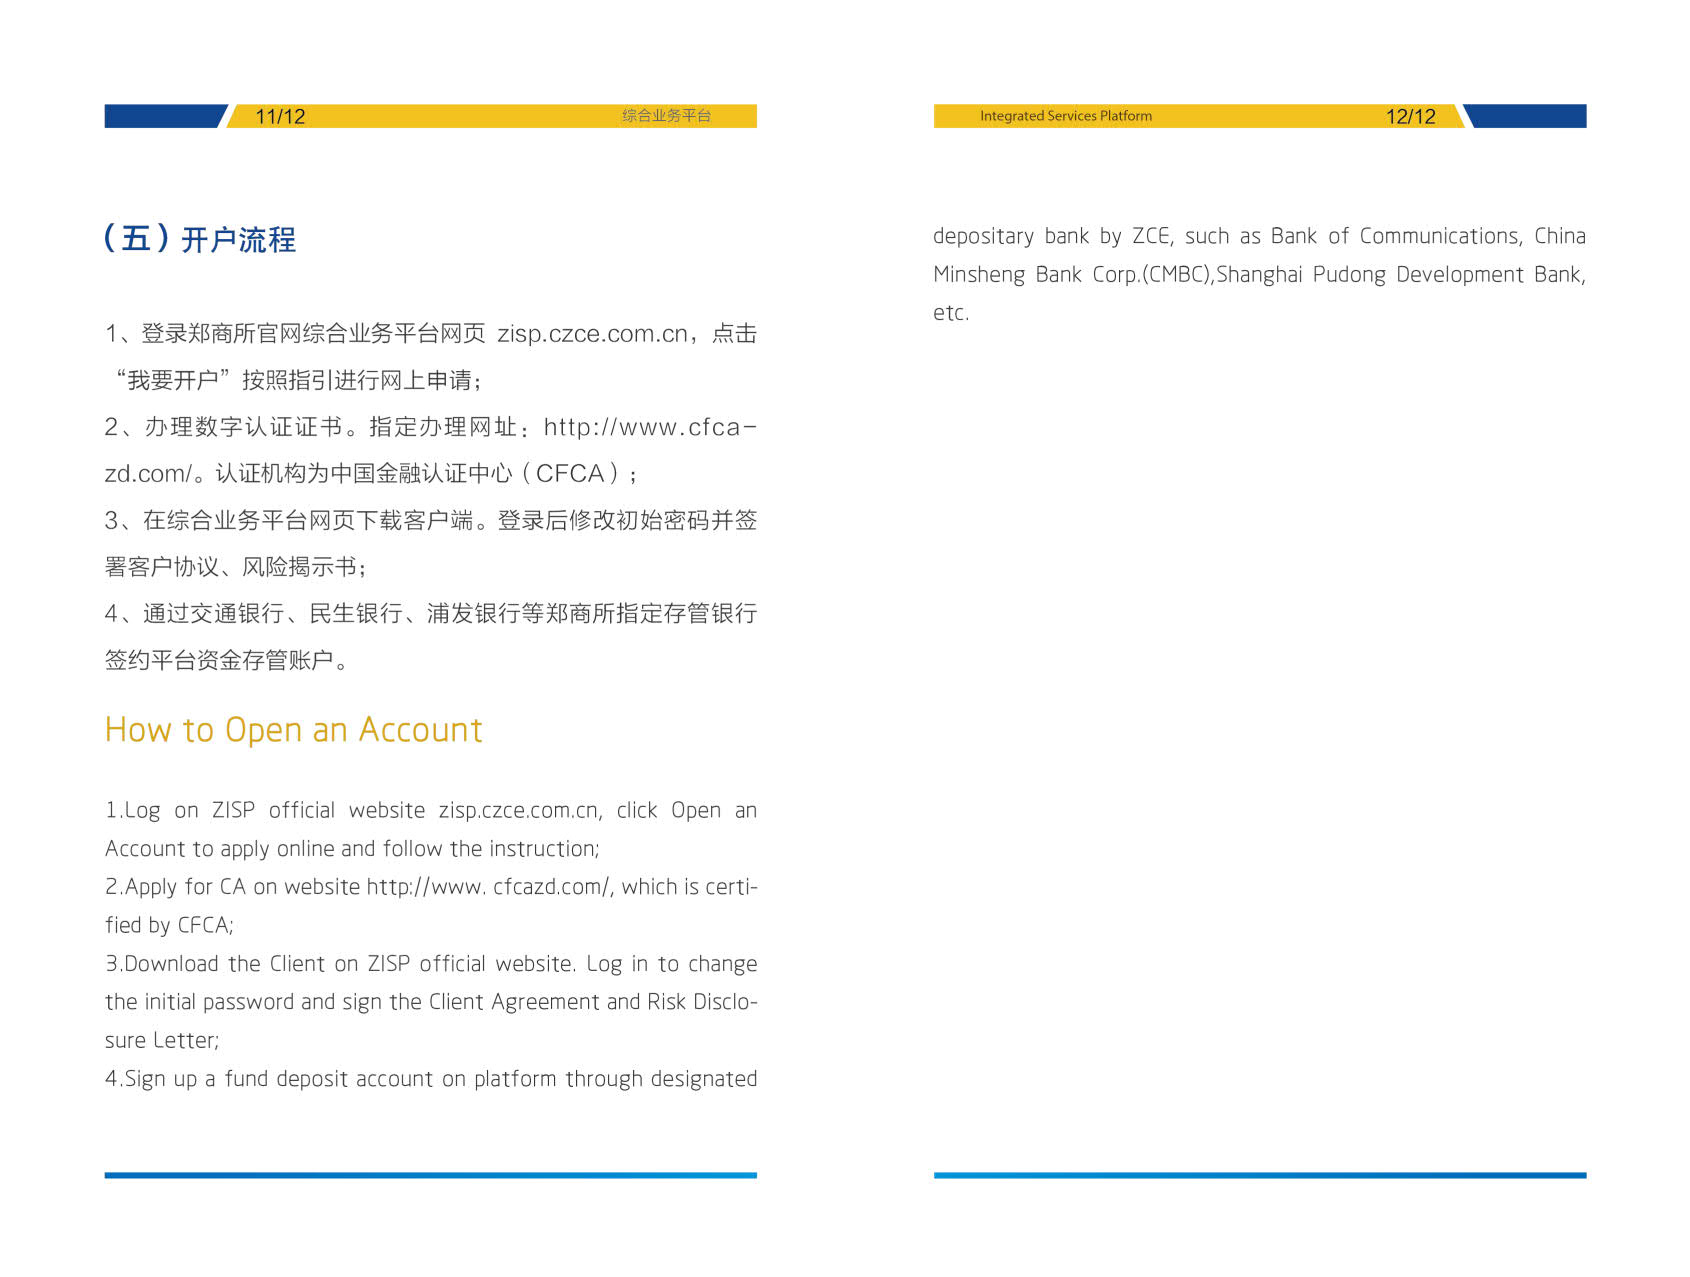 综合业务平台——郑商所仓单交易和基差贸易宣传手册_9.jpg